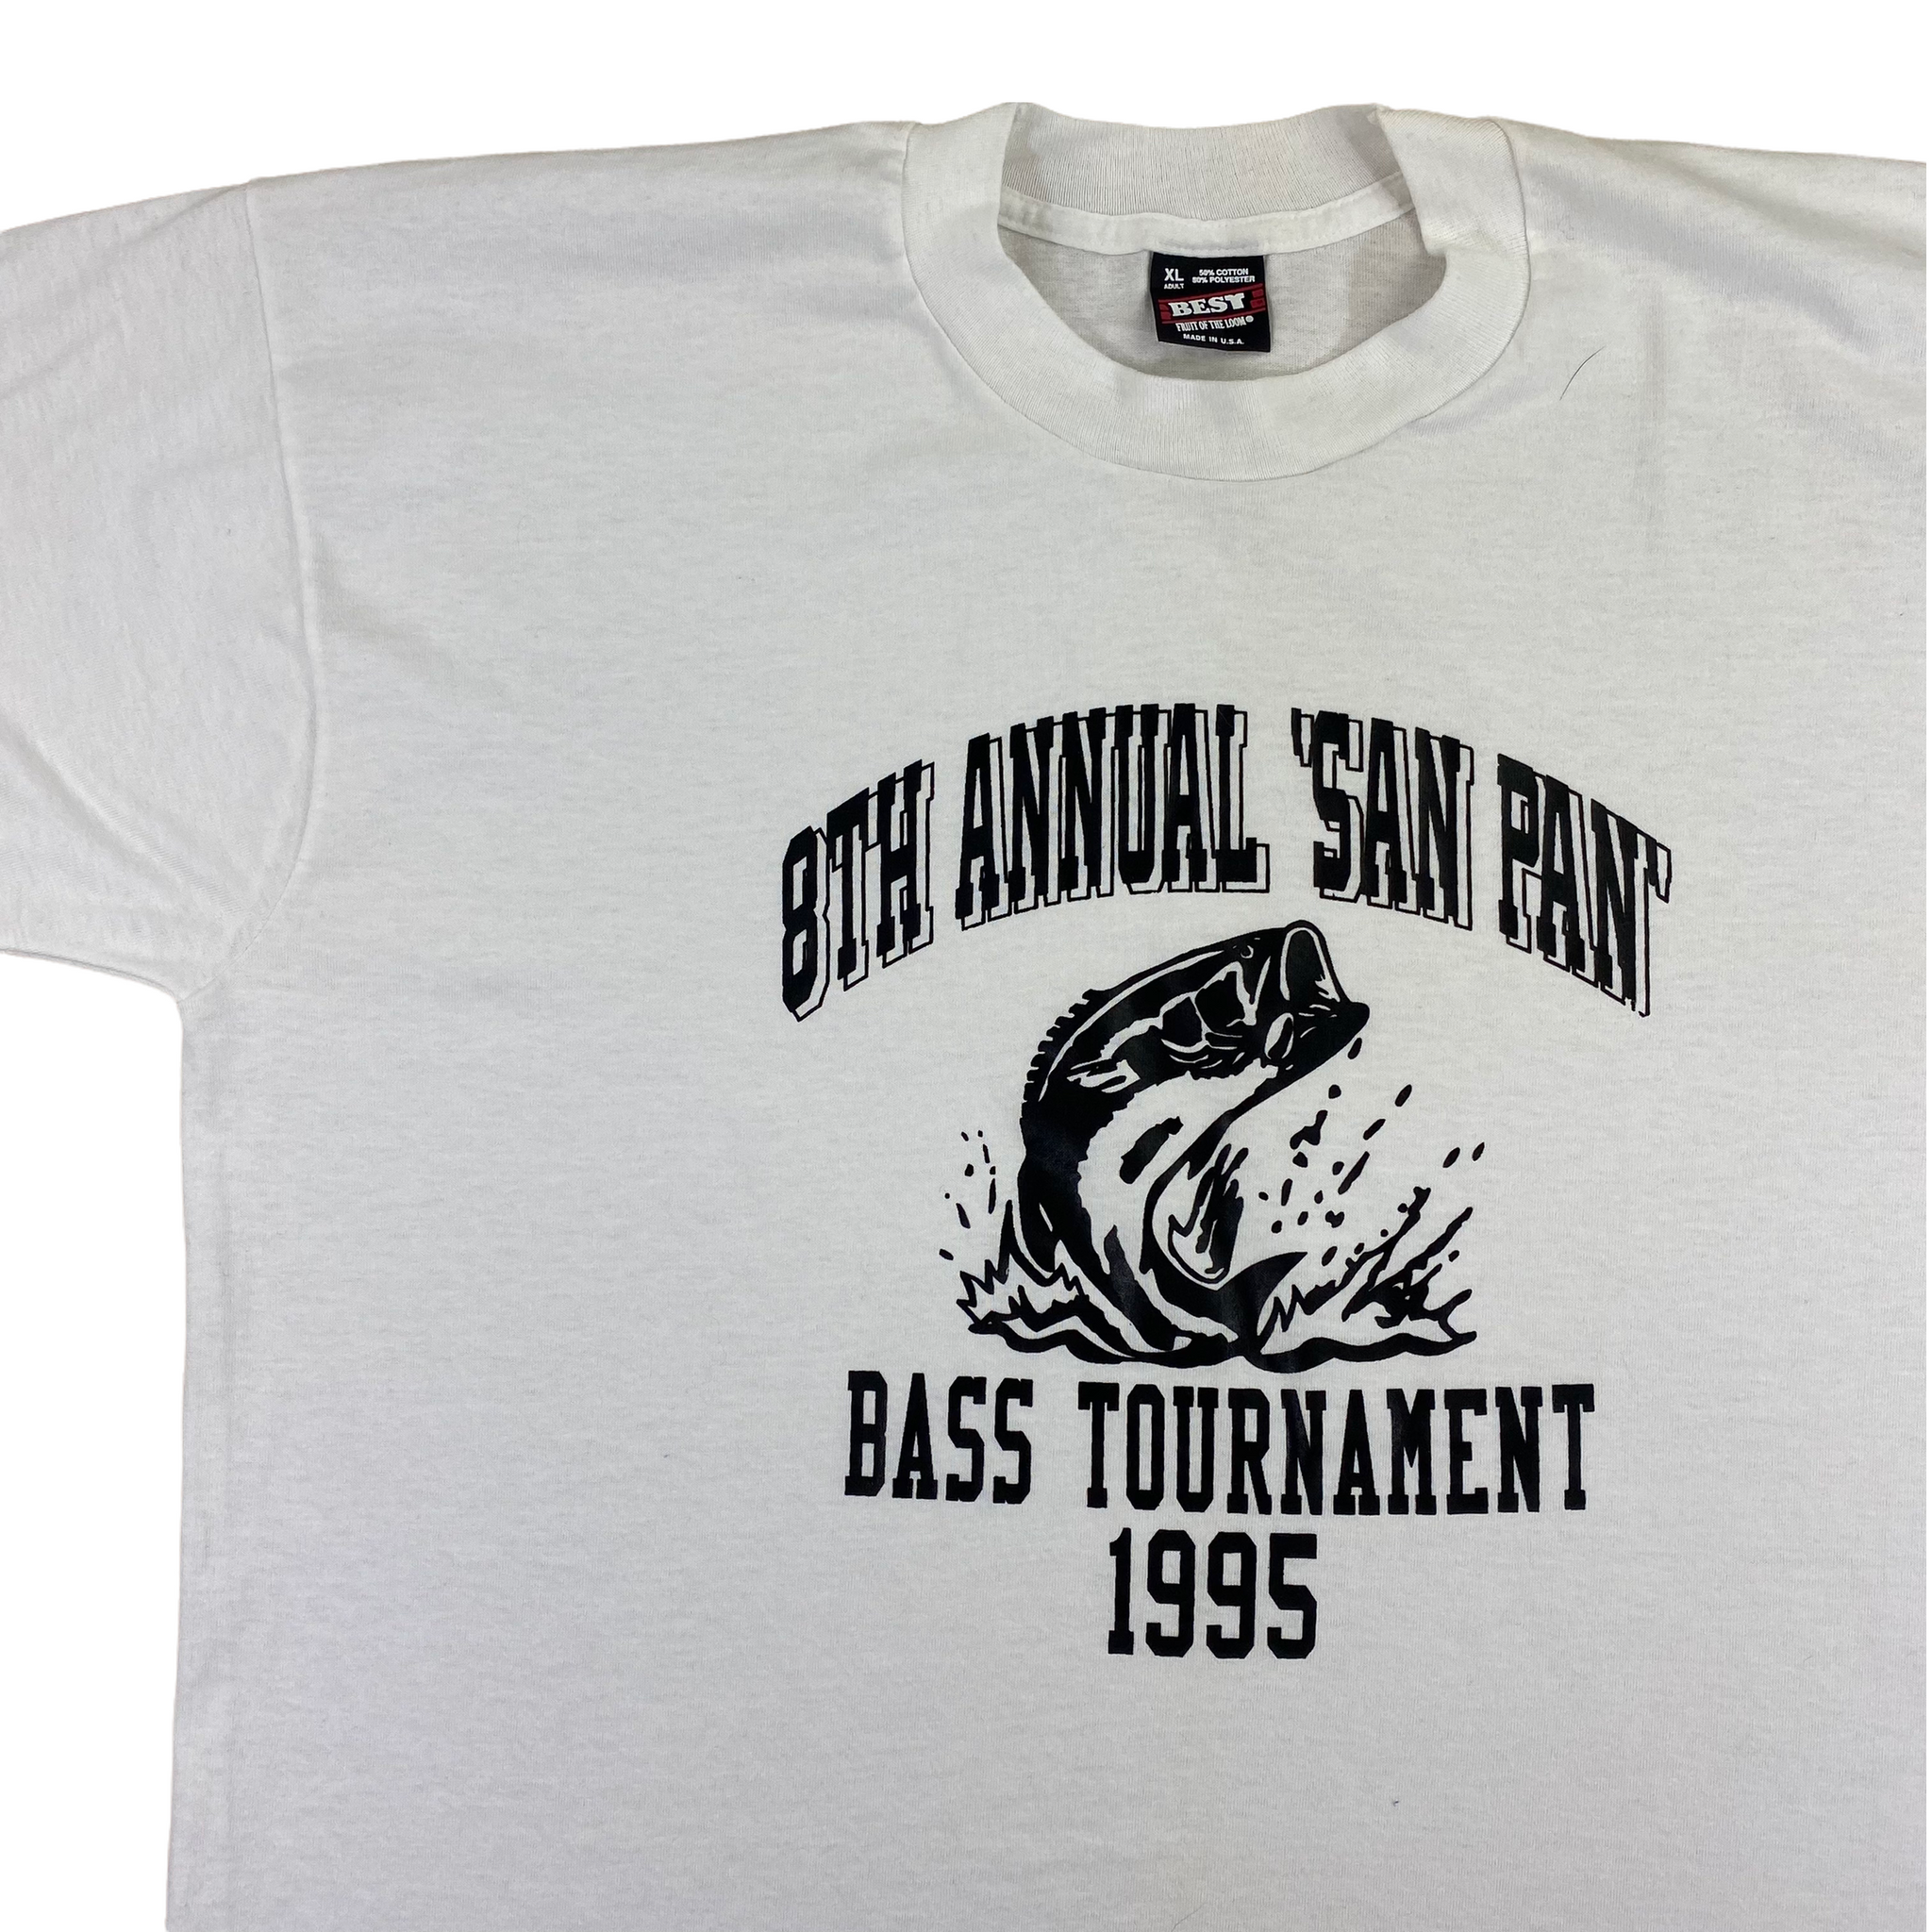 1995 Bass tournament tee XL